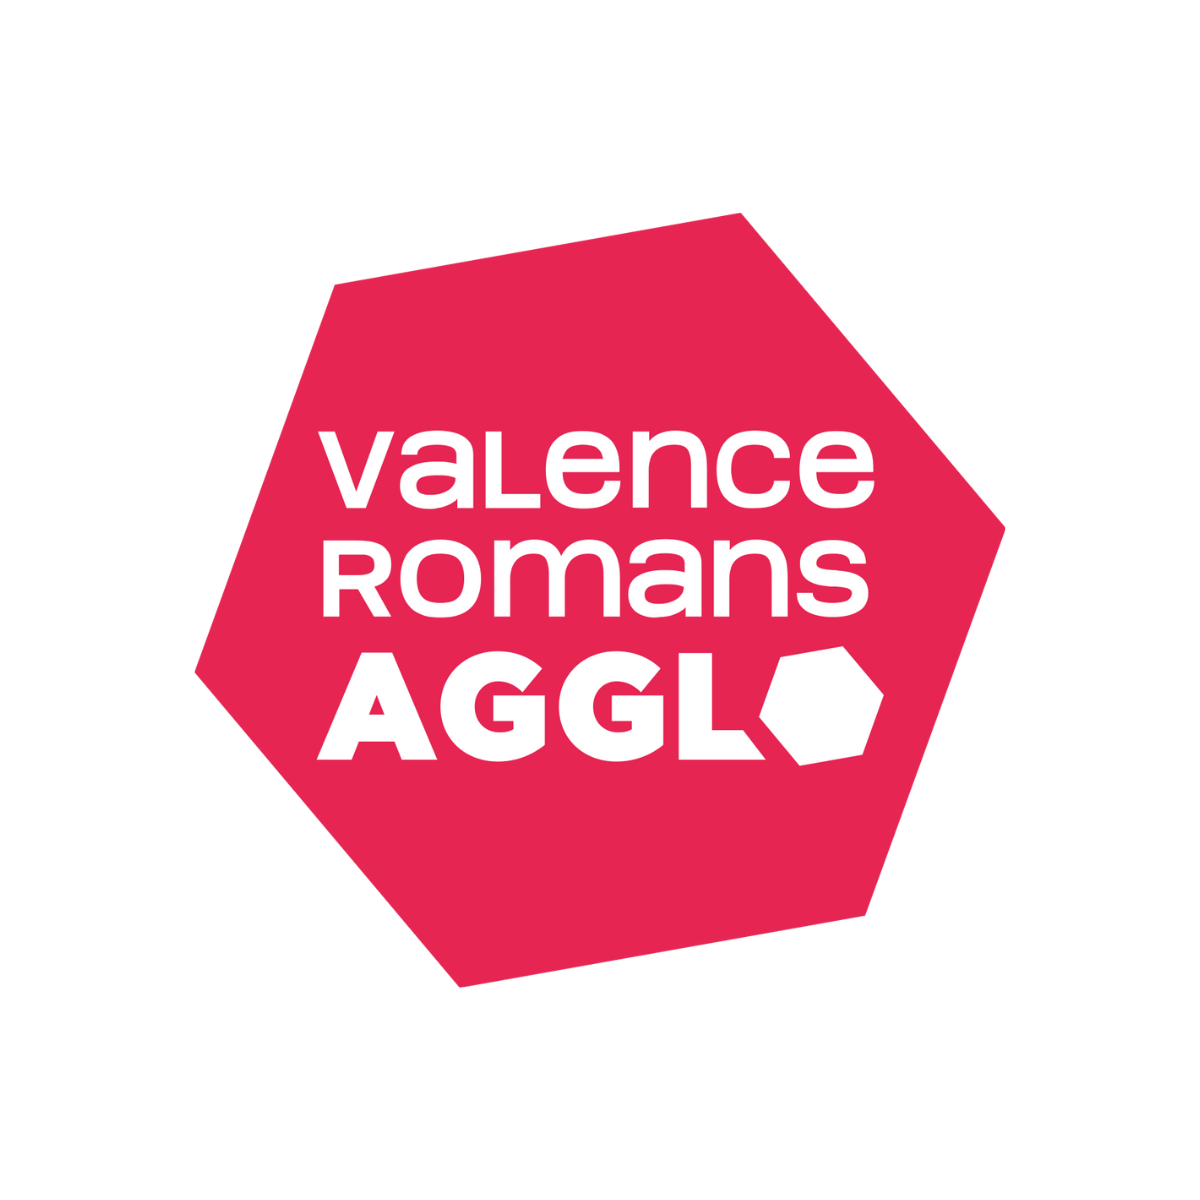 Le logo de Valence Romans Agglo est affiché ici pour mettre en avant son partenariat avec AKTISEA dans l'optimisation de la politique handicap de l'entreprise. Chez AKTISEA, entreprise adaptée, nous sommes engagés pour plus d'inclusion.